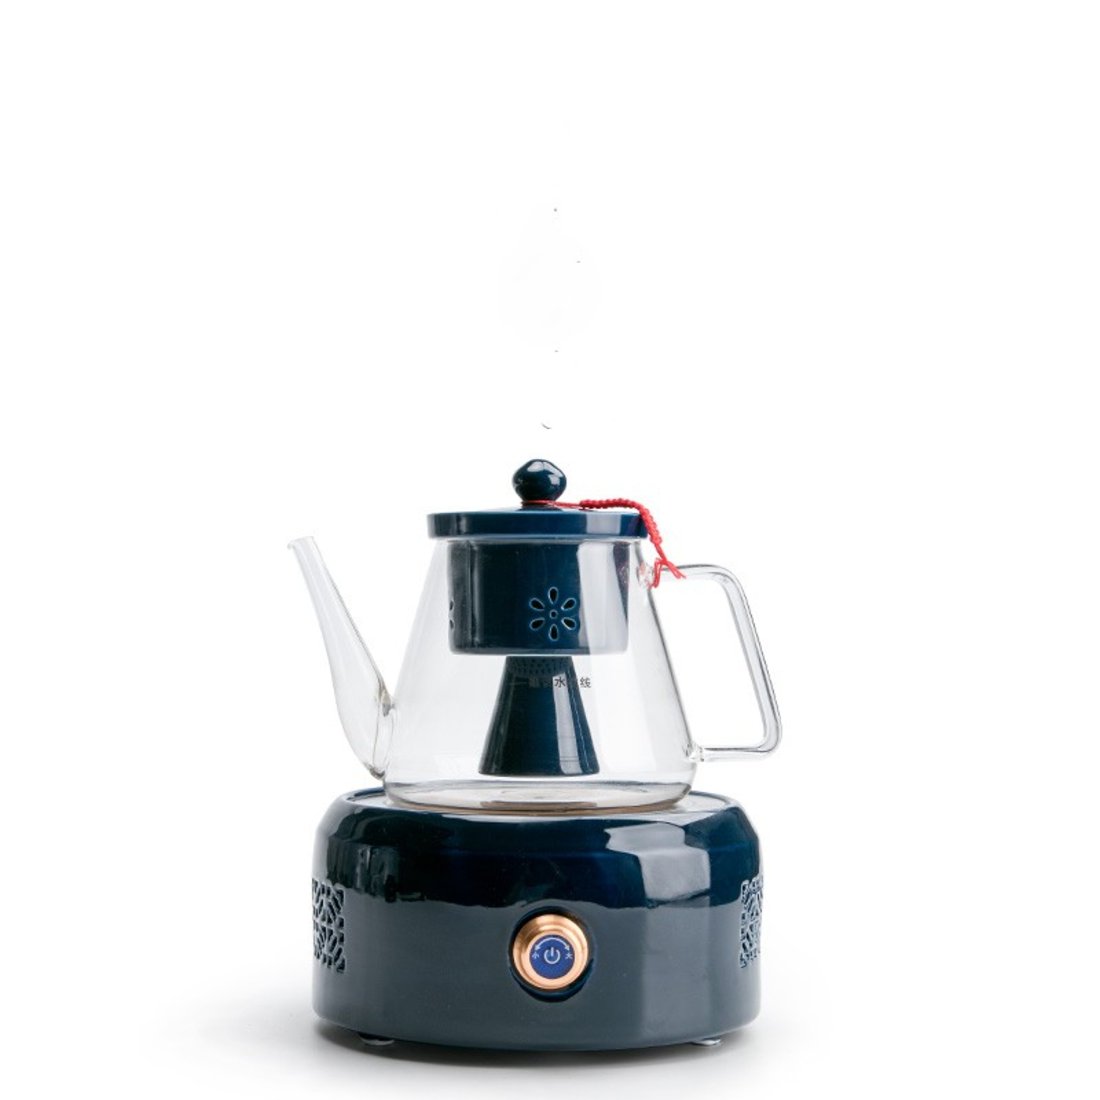 「泡茶器套装」玻璃电陶炉煮茶壶